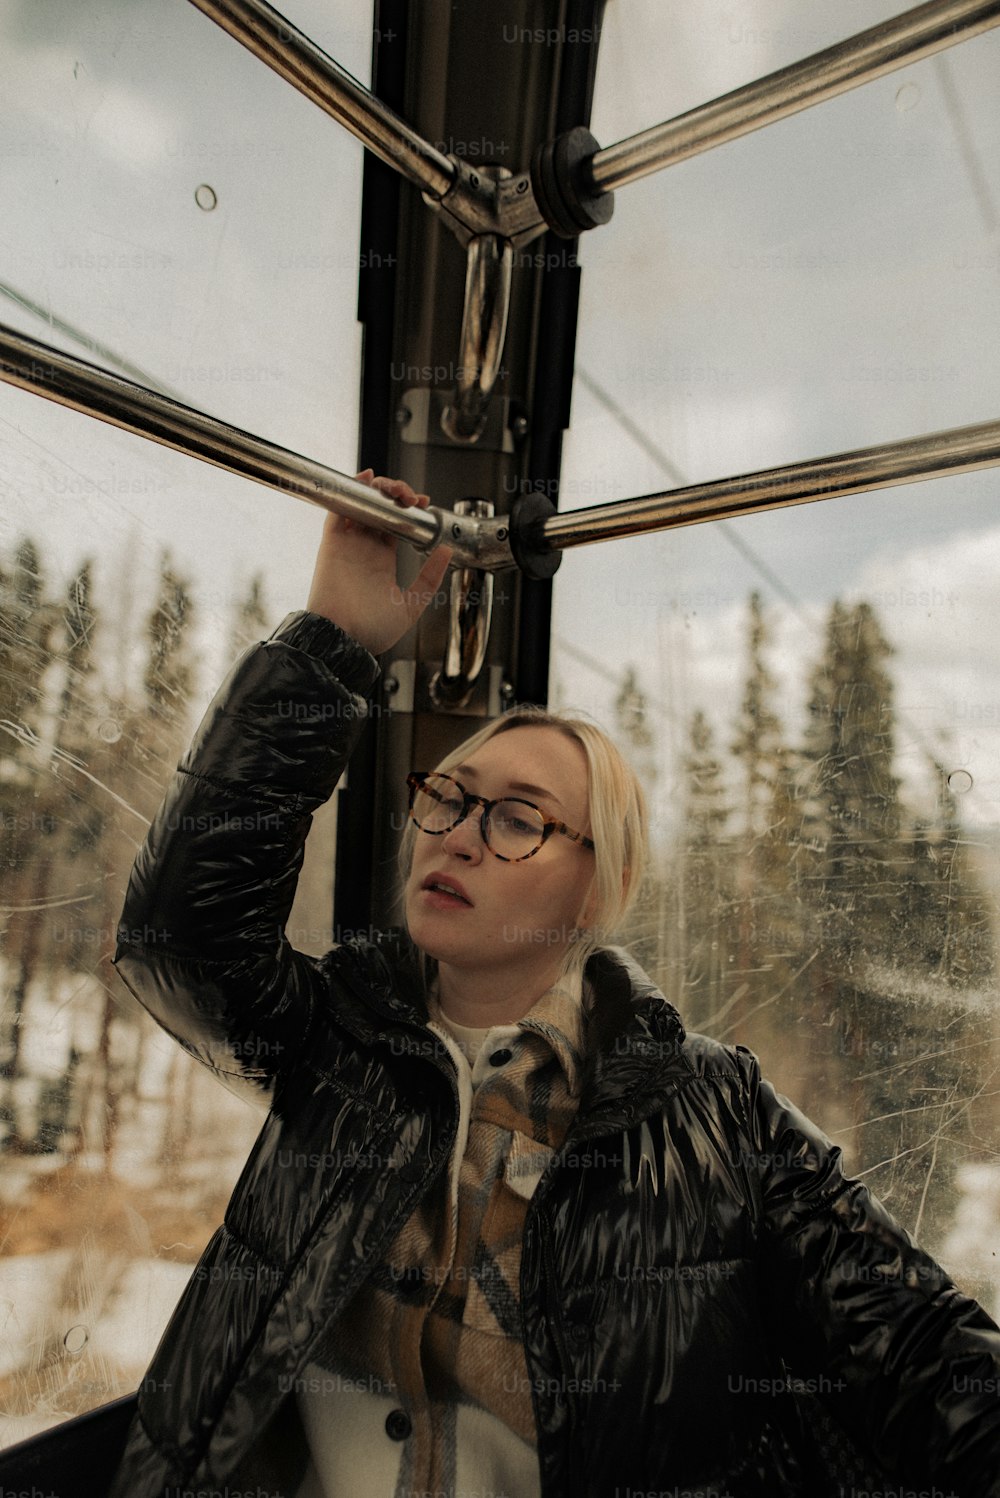 Una donna in una giacca nera e occhiali su un treno